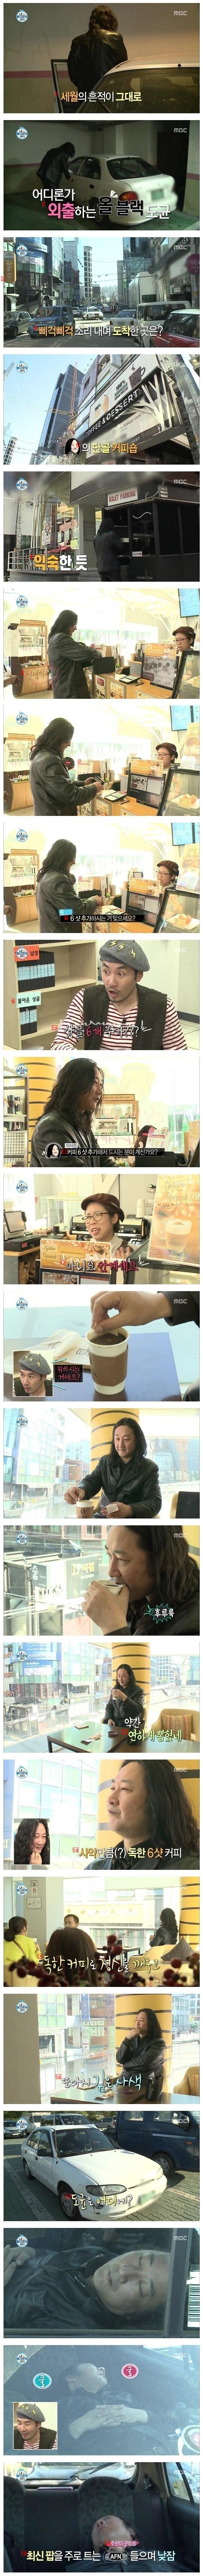 커피 6샷 마신 연예인의 최후.jpg